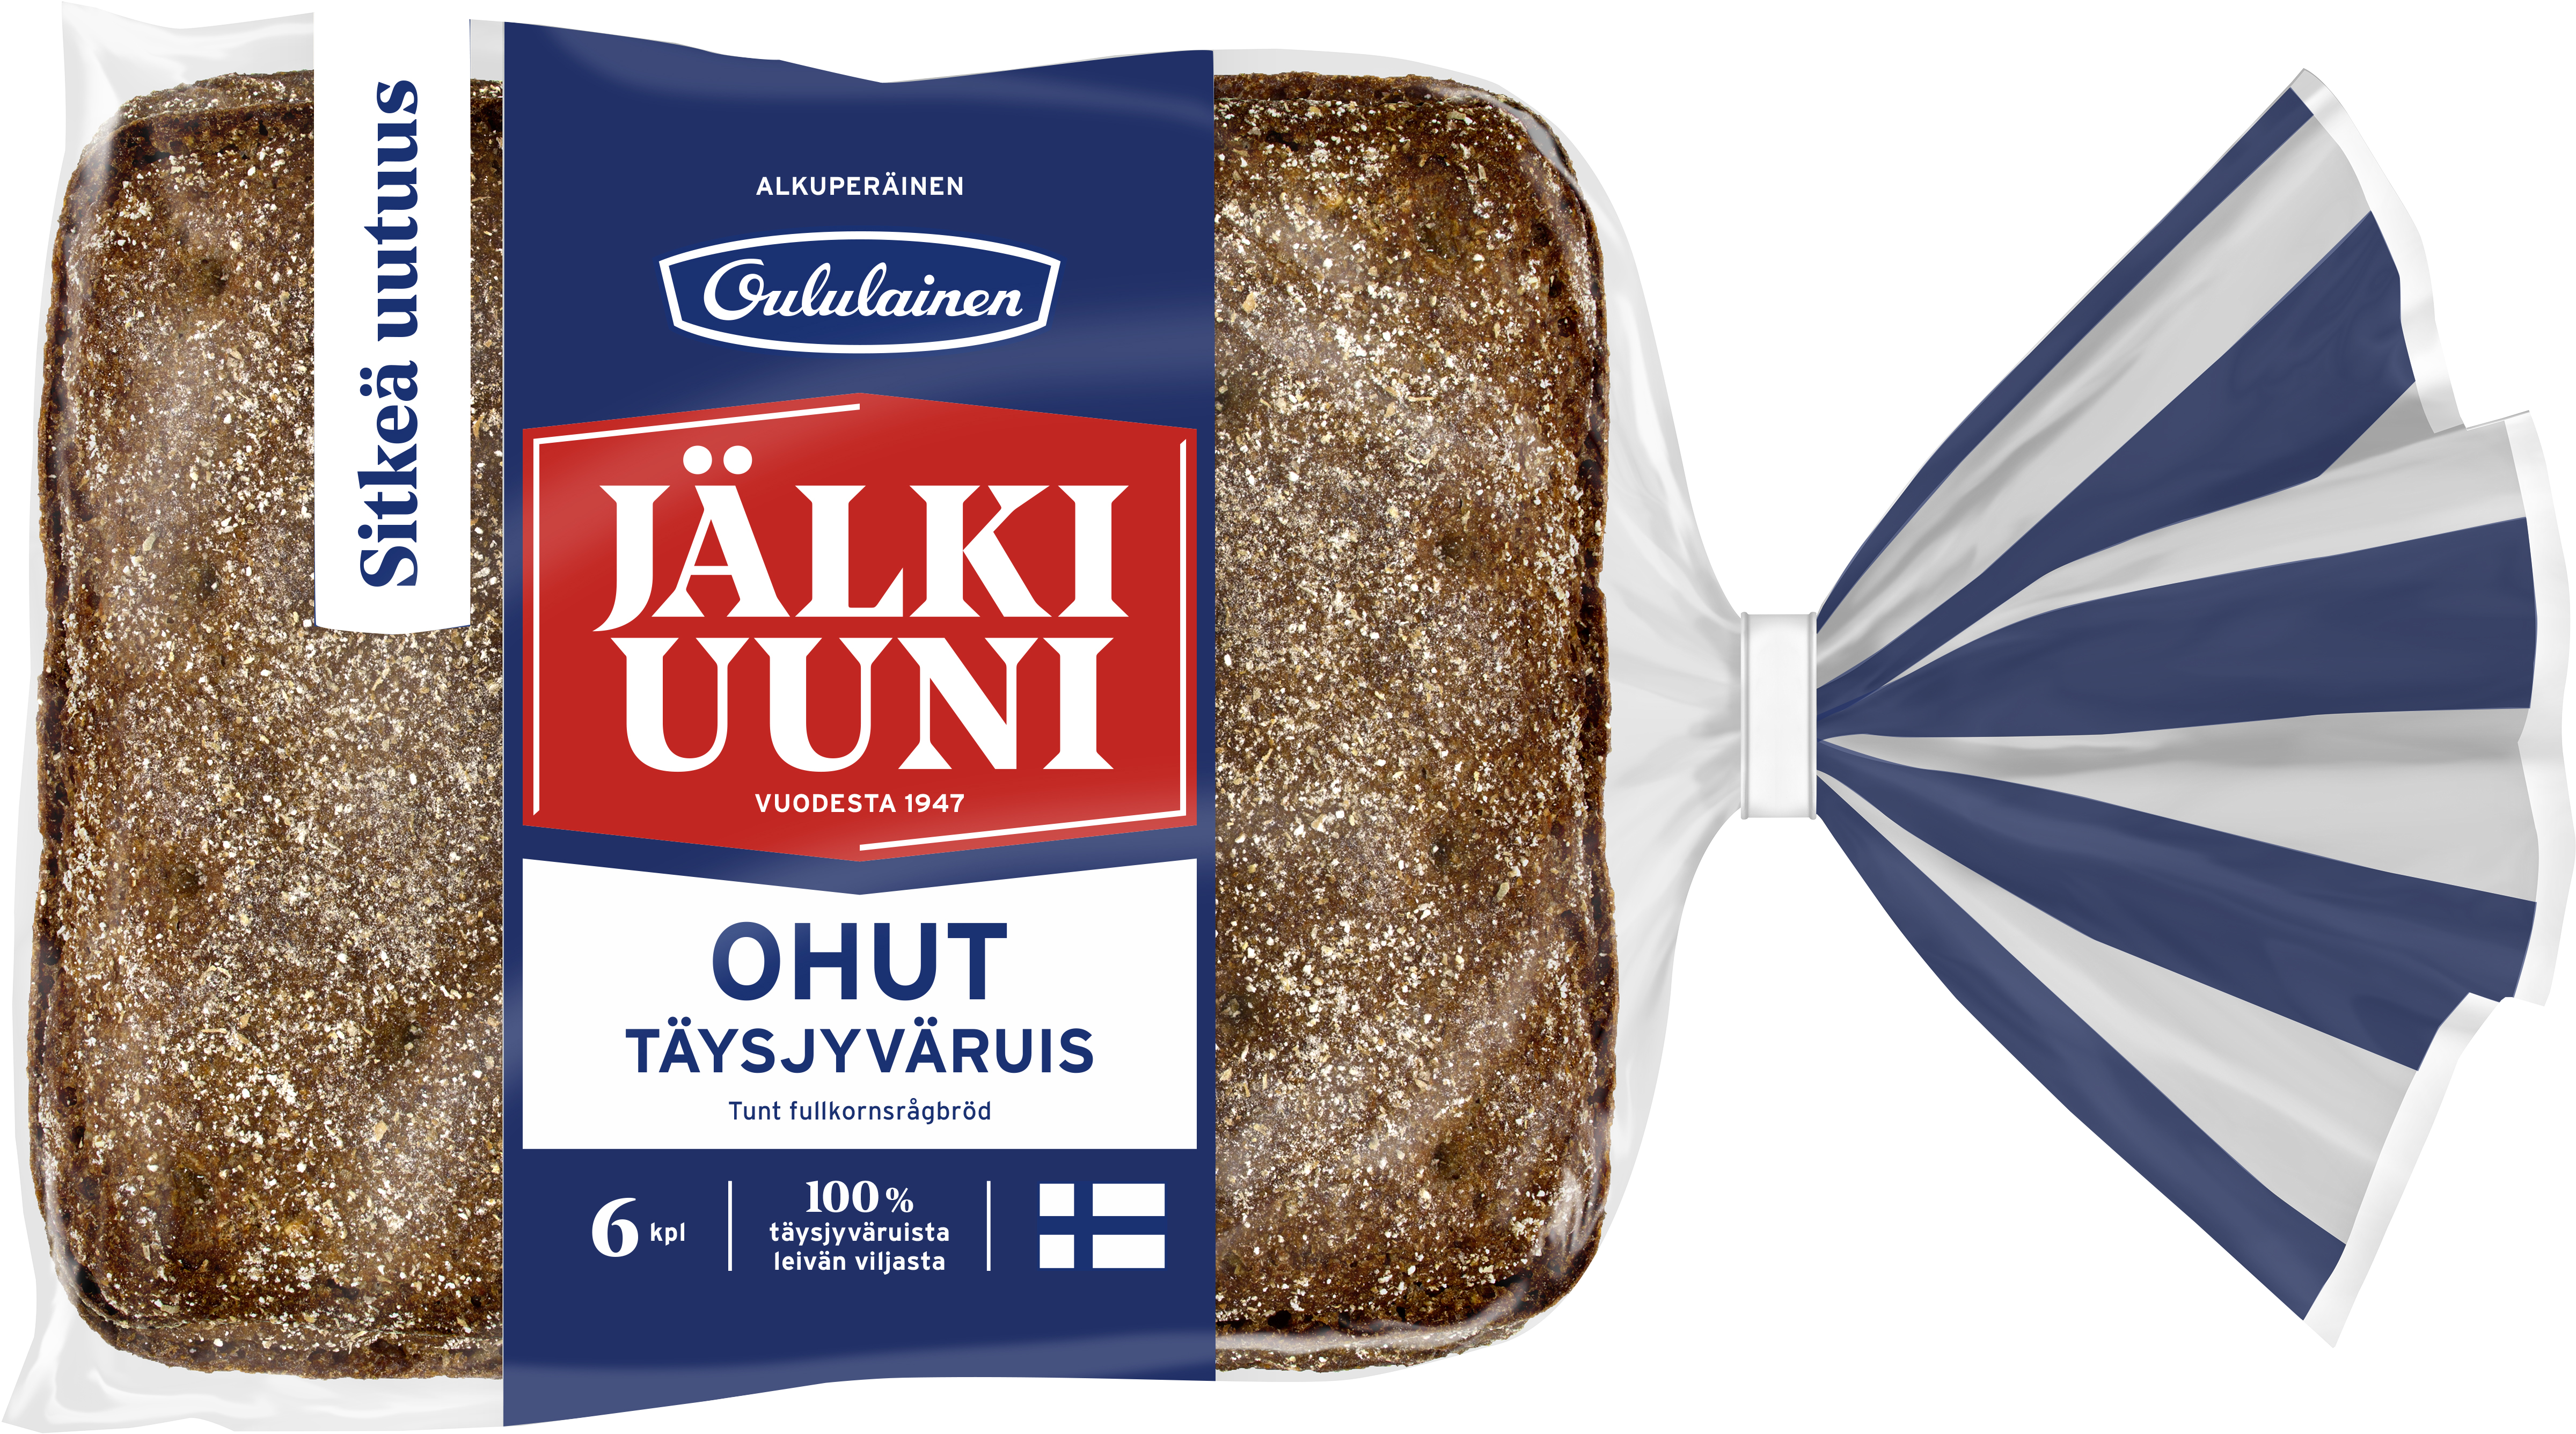 Oululainen Jälkiuuni Ohut 6pcs 240g, whole grain rye bread